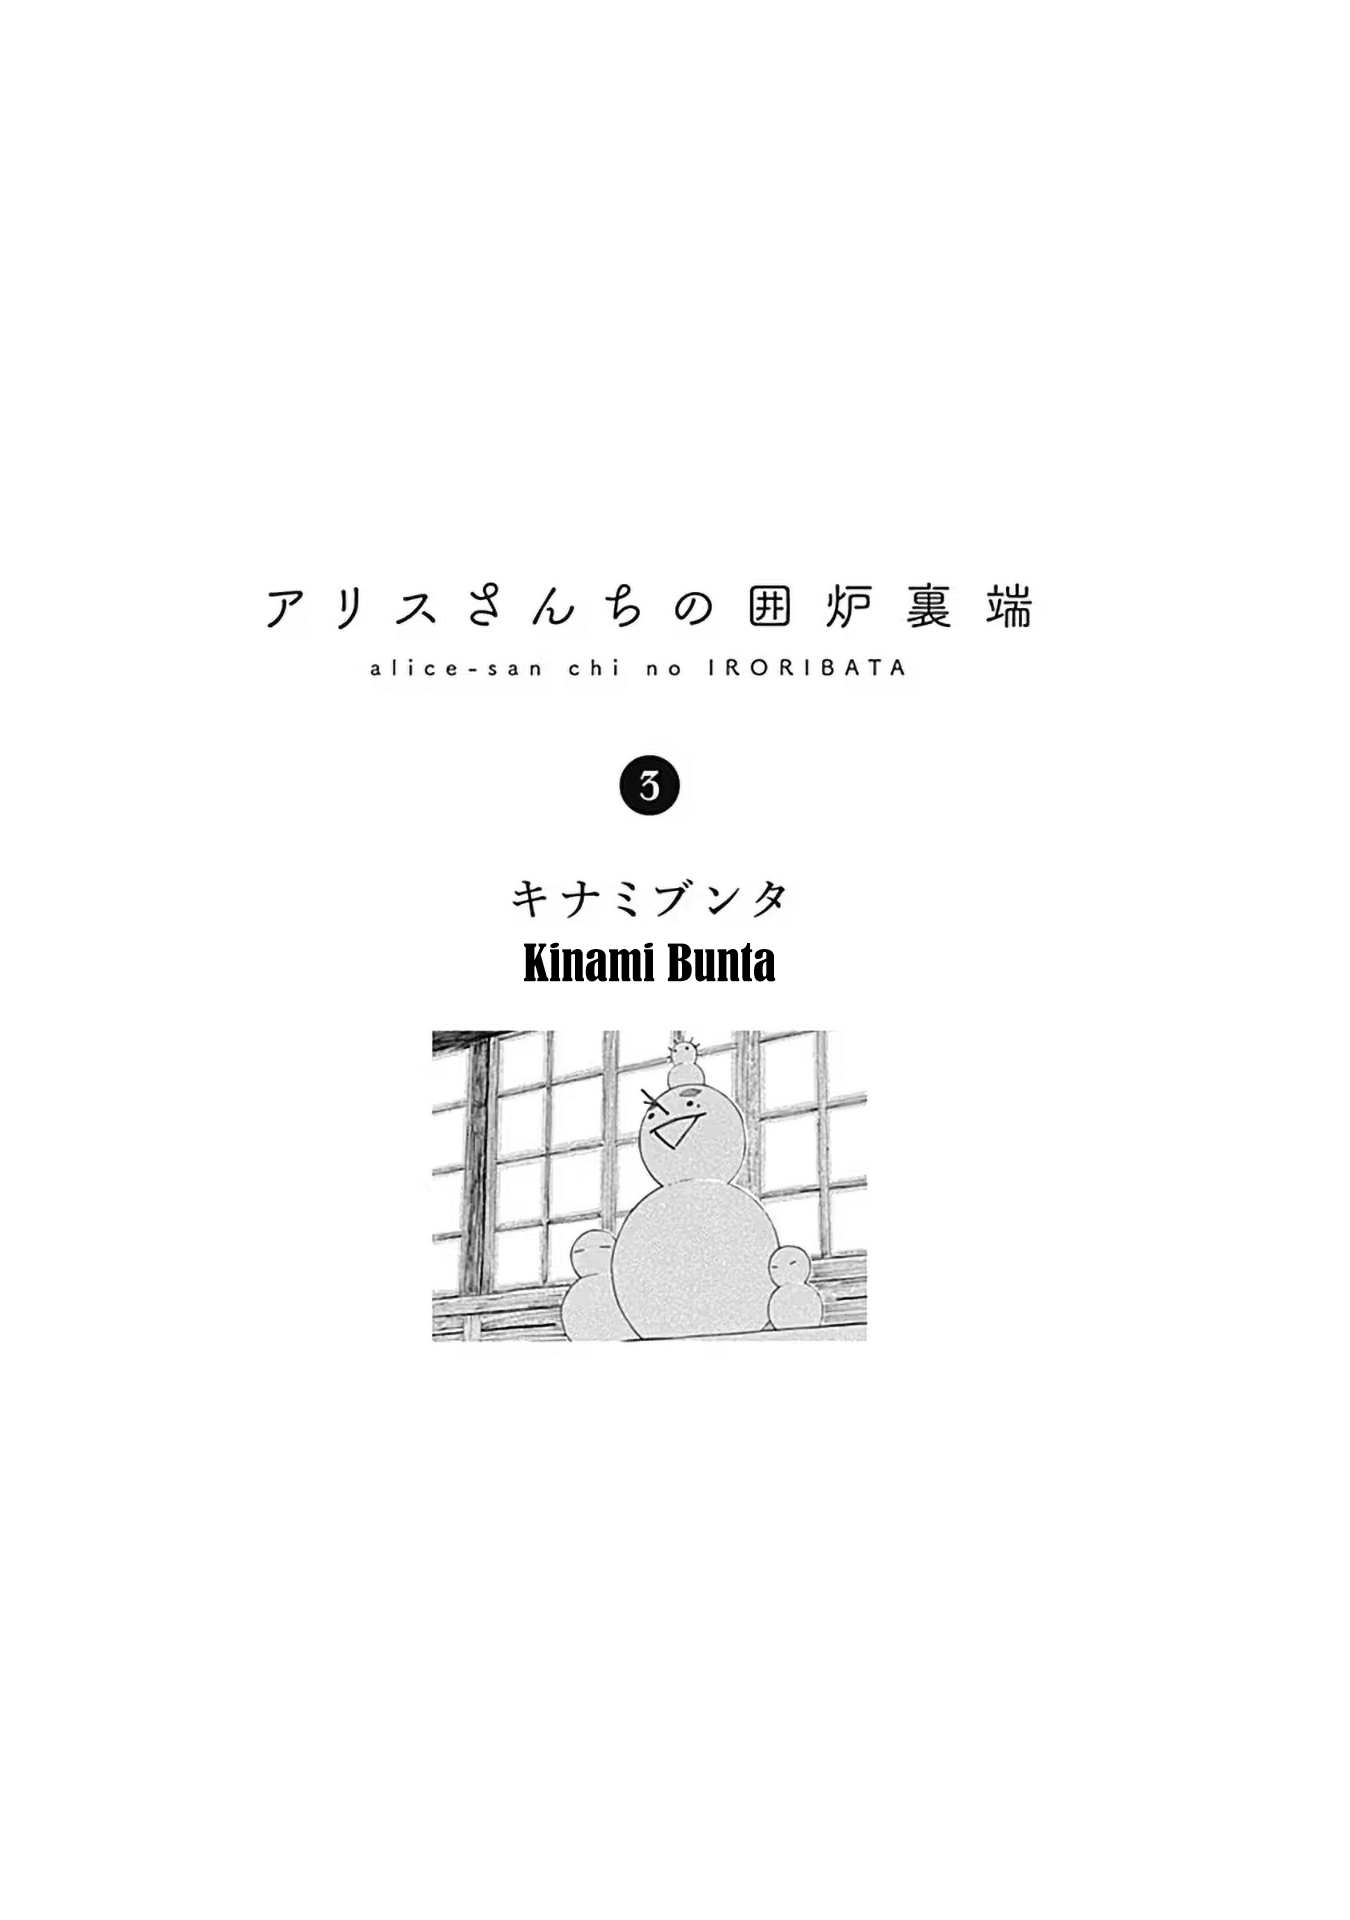 Alice-San Chi No Iroribata Vol.3 Chapter 15: Mametan Kotatsu And Toshikoshi Soba - Picture 3